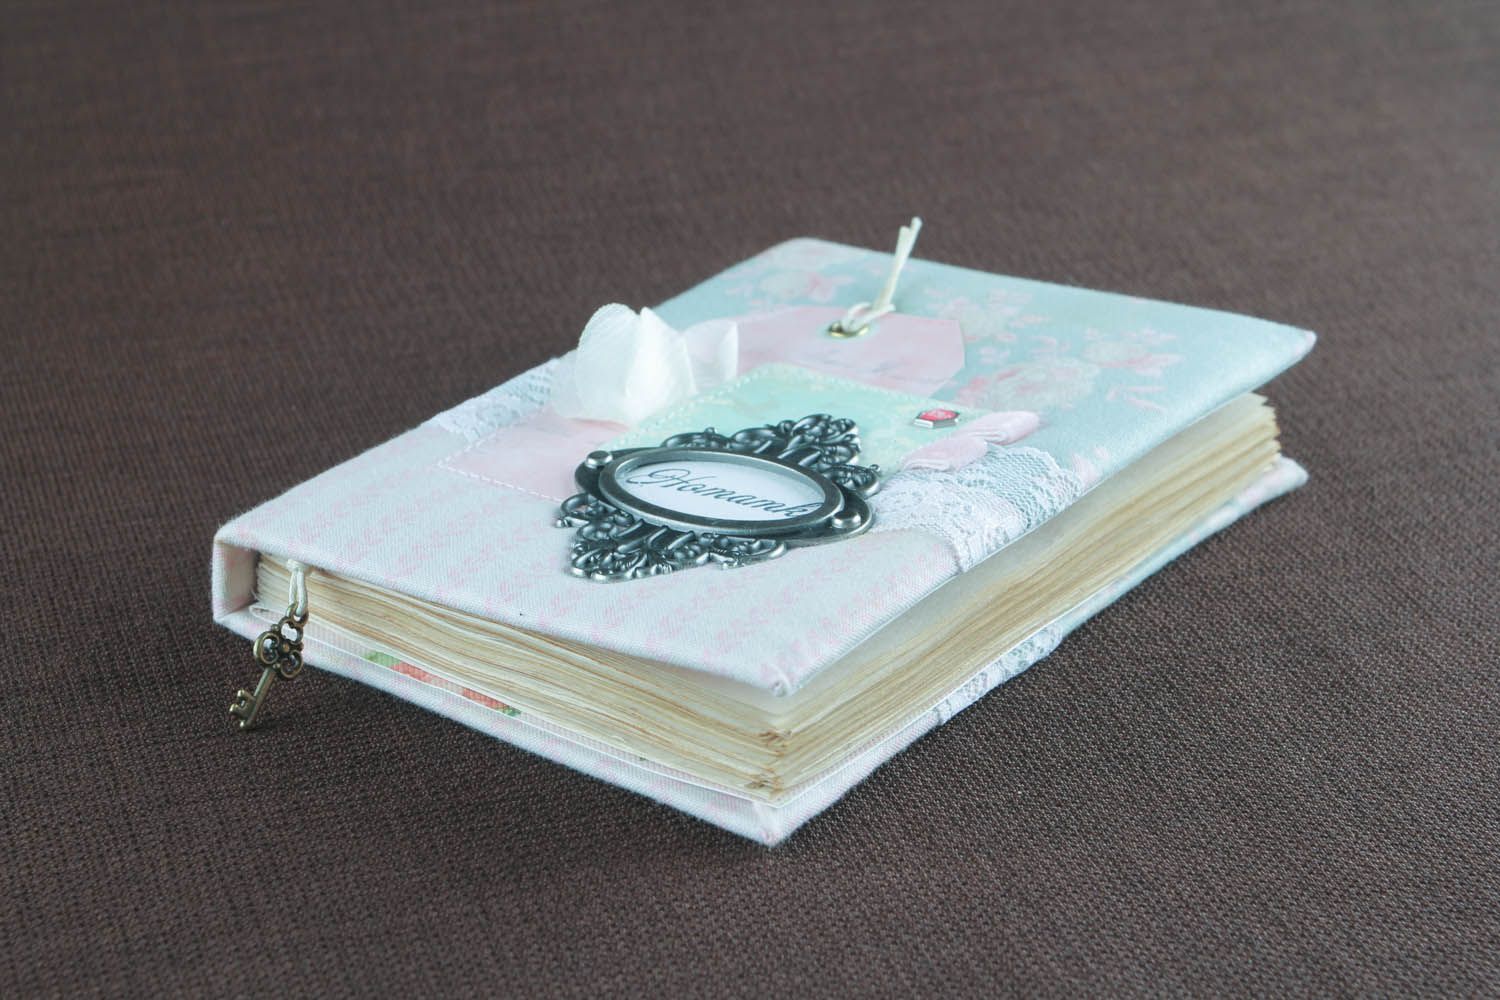 Bloco de notas feito à mão com capa de tecido com cheiro  decorado com elementos decorativos foto 4